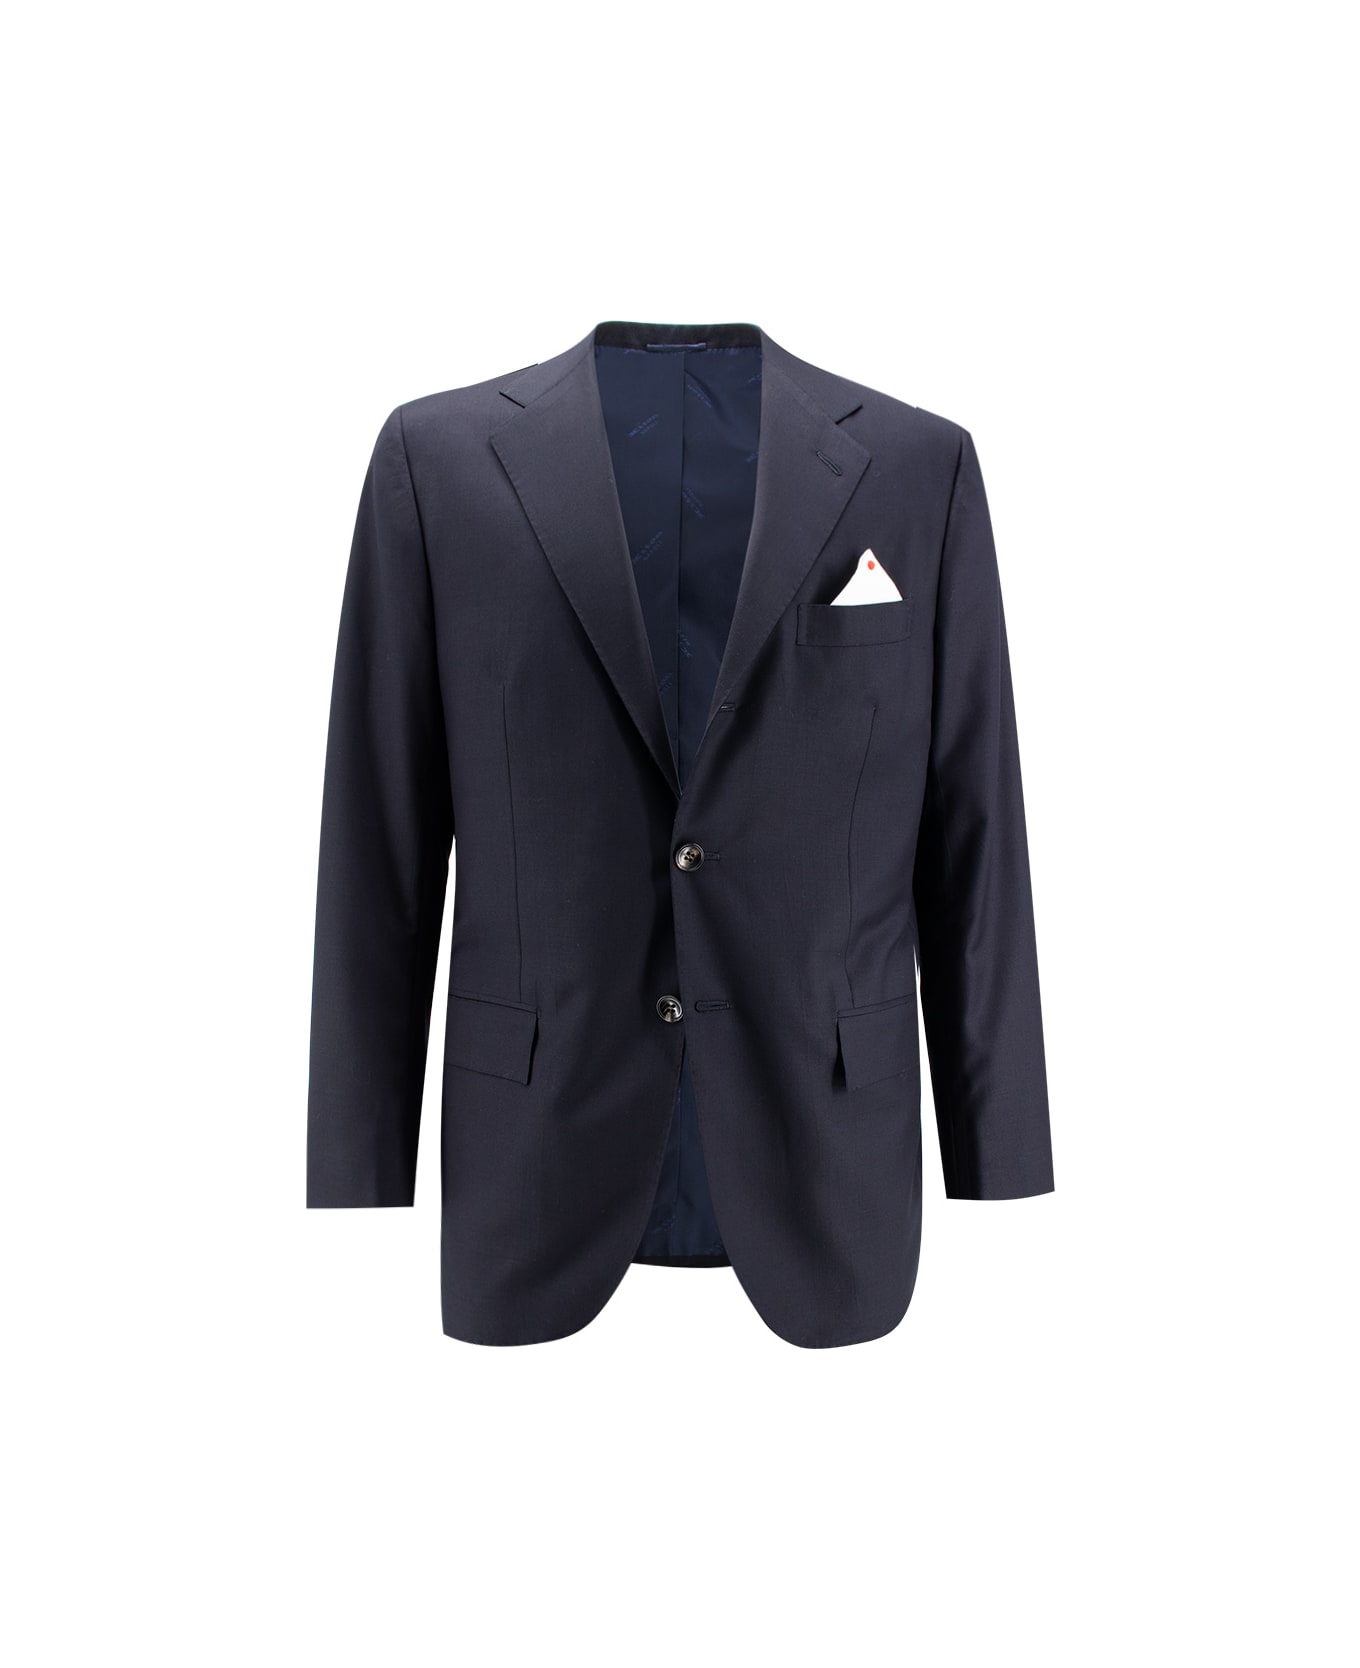 Kiton Suit - NAVY BLUE スーツ